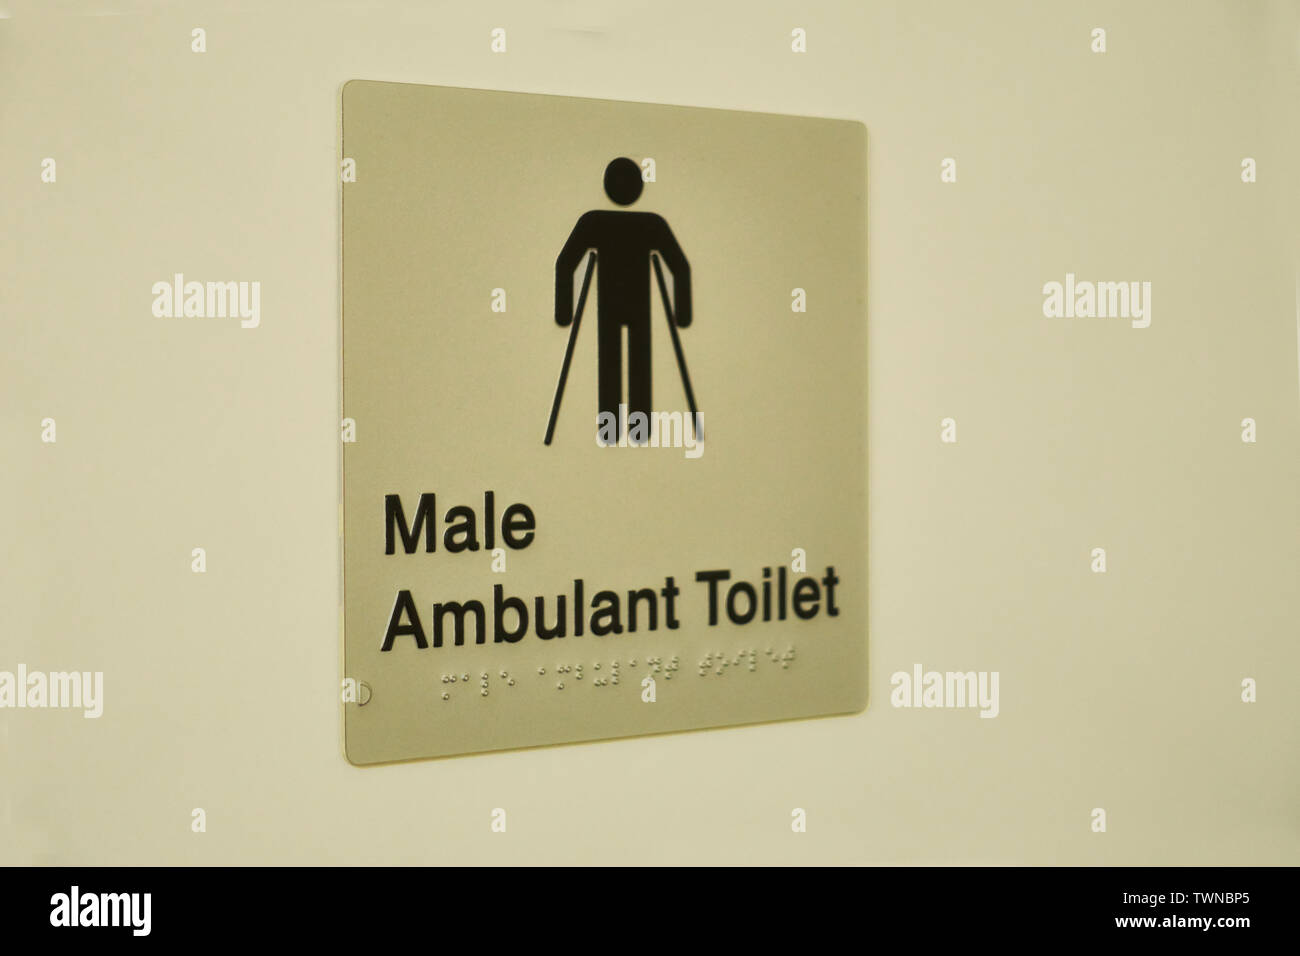 Signer sur une porte des toilettes. 'Masculin' Toilettes ambulatoire avec caractères Braille. Banque D'Images